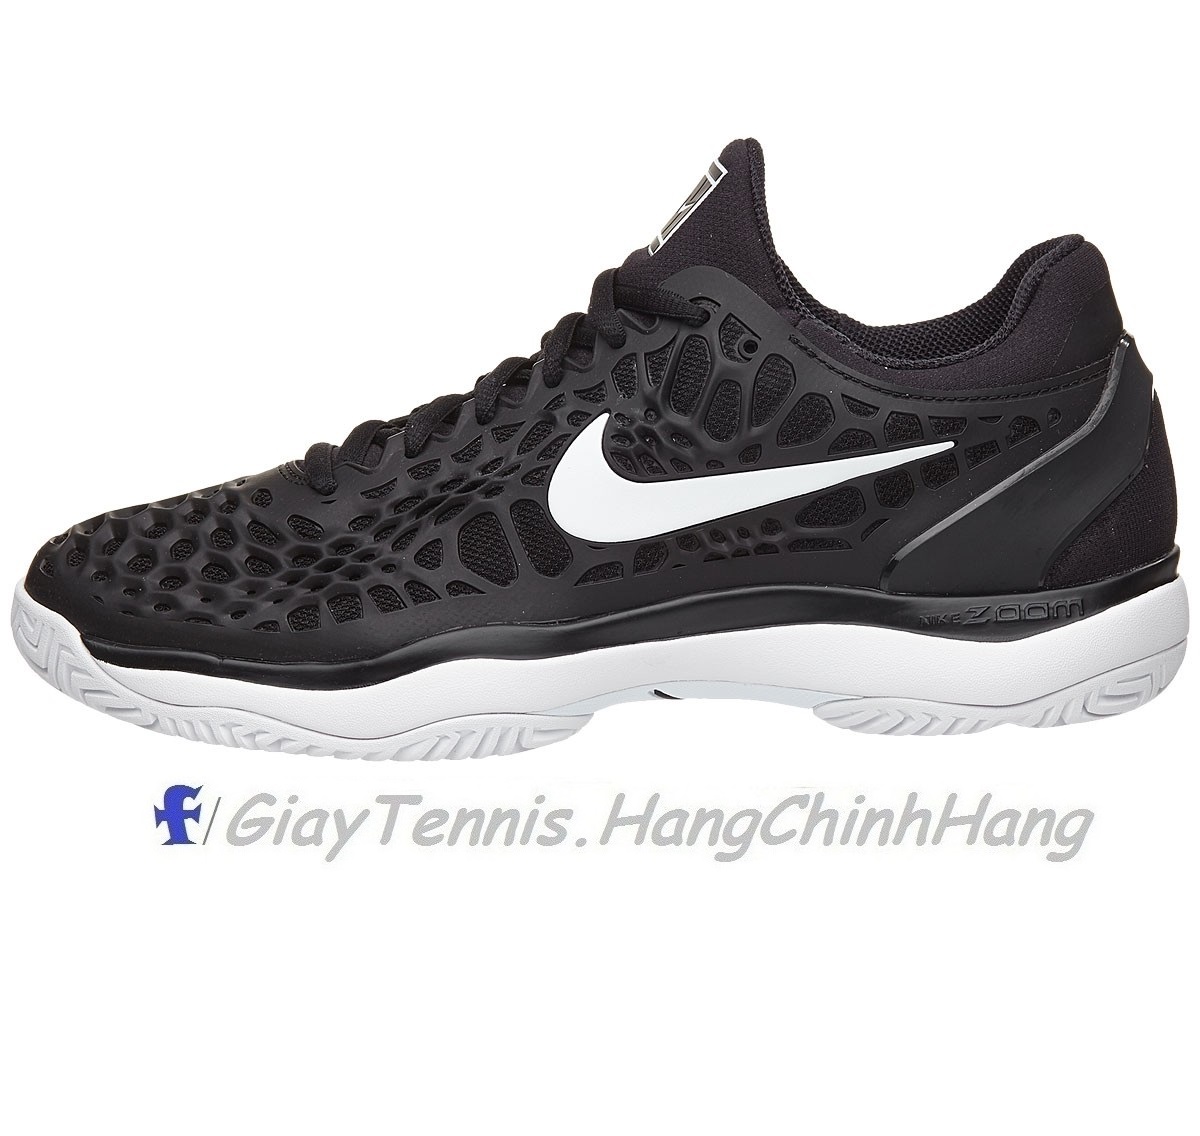 Giày Tennis Nike Air Zoom Cage 3 Black/White 918193-010 | Trang Nguyên Sport